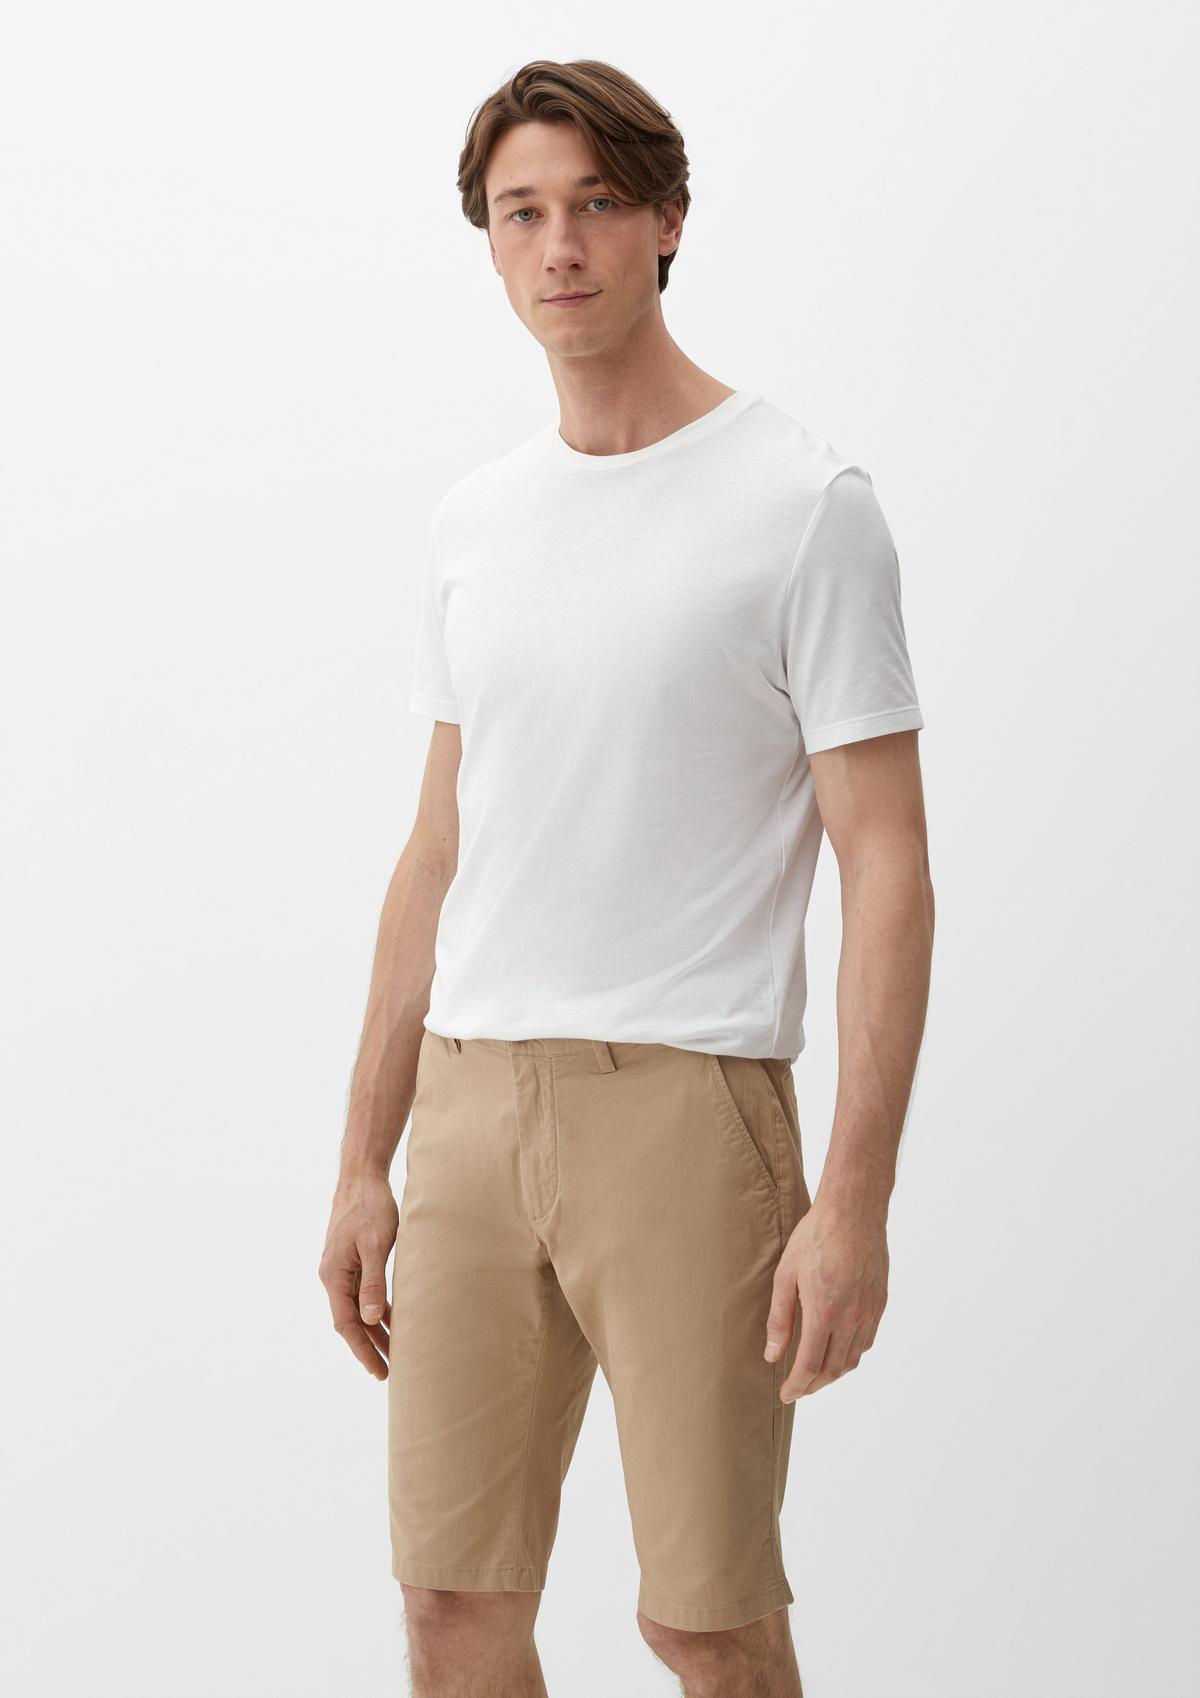 Bermuda shorts in blended linen white 